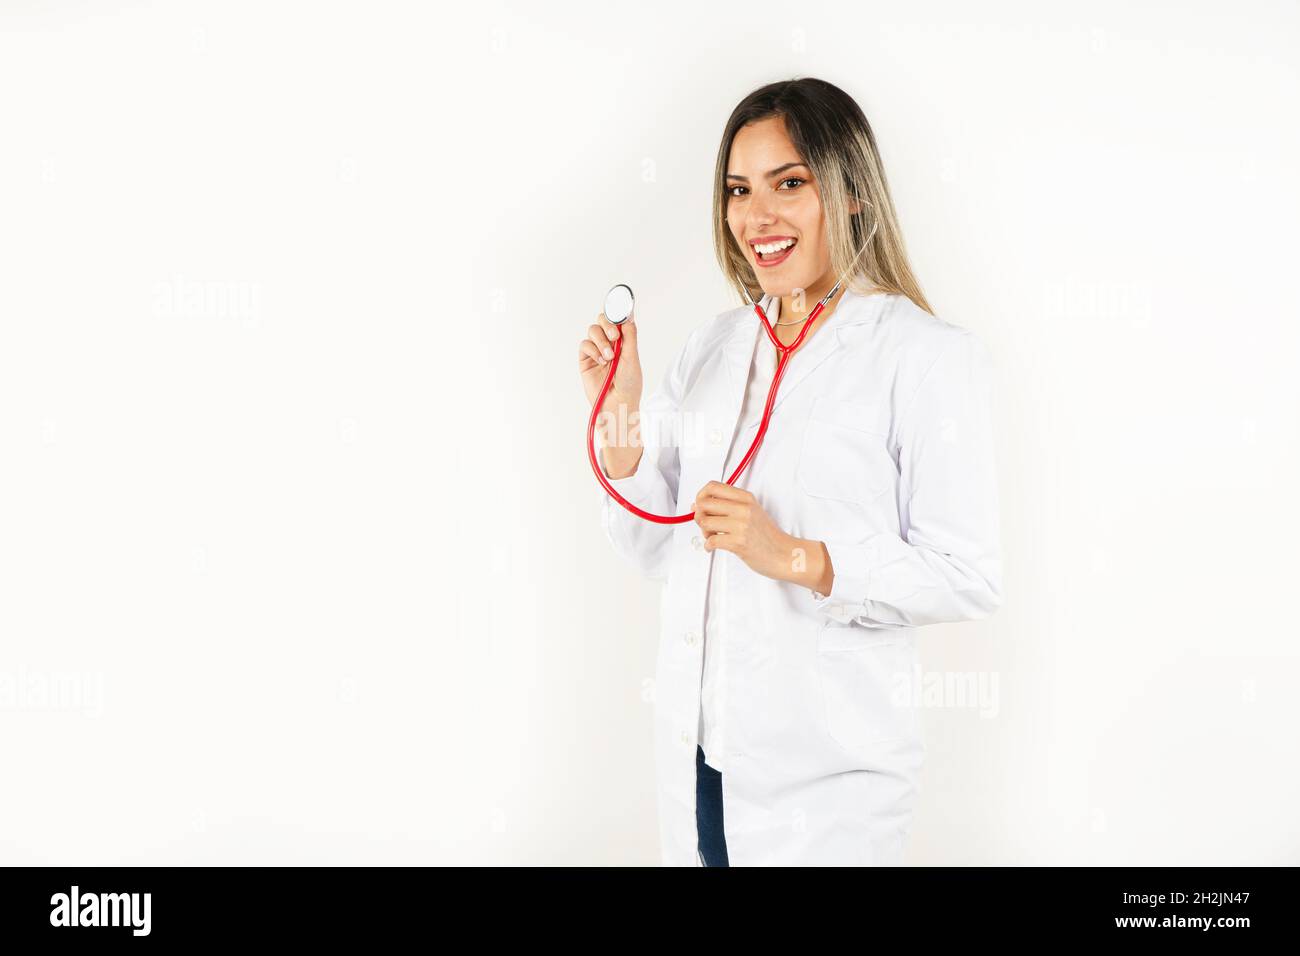 Junge lächelnde Ärztin aus Latina, die mit dem Stethoskop in den Händen steht und an ihrem Hals hängt. Konzept der professionellen Frau, Gesundheitspersonal. Mittel Stockfoto